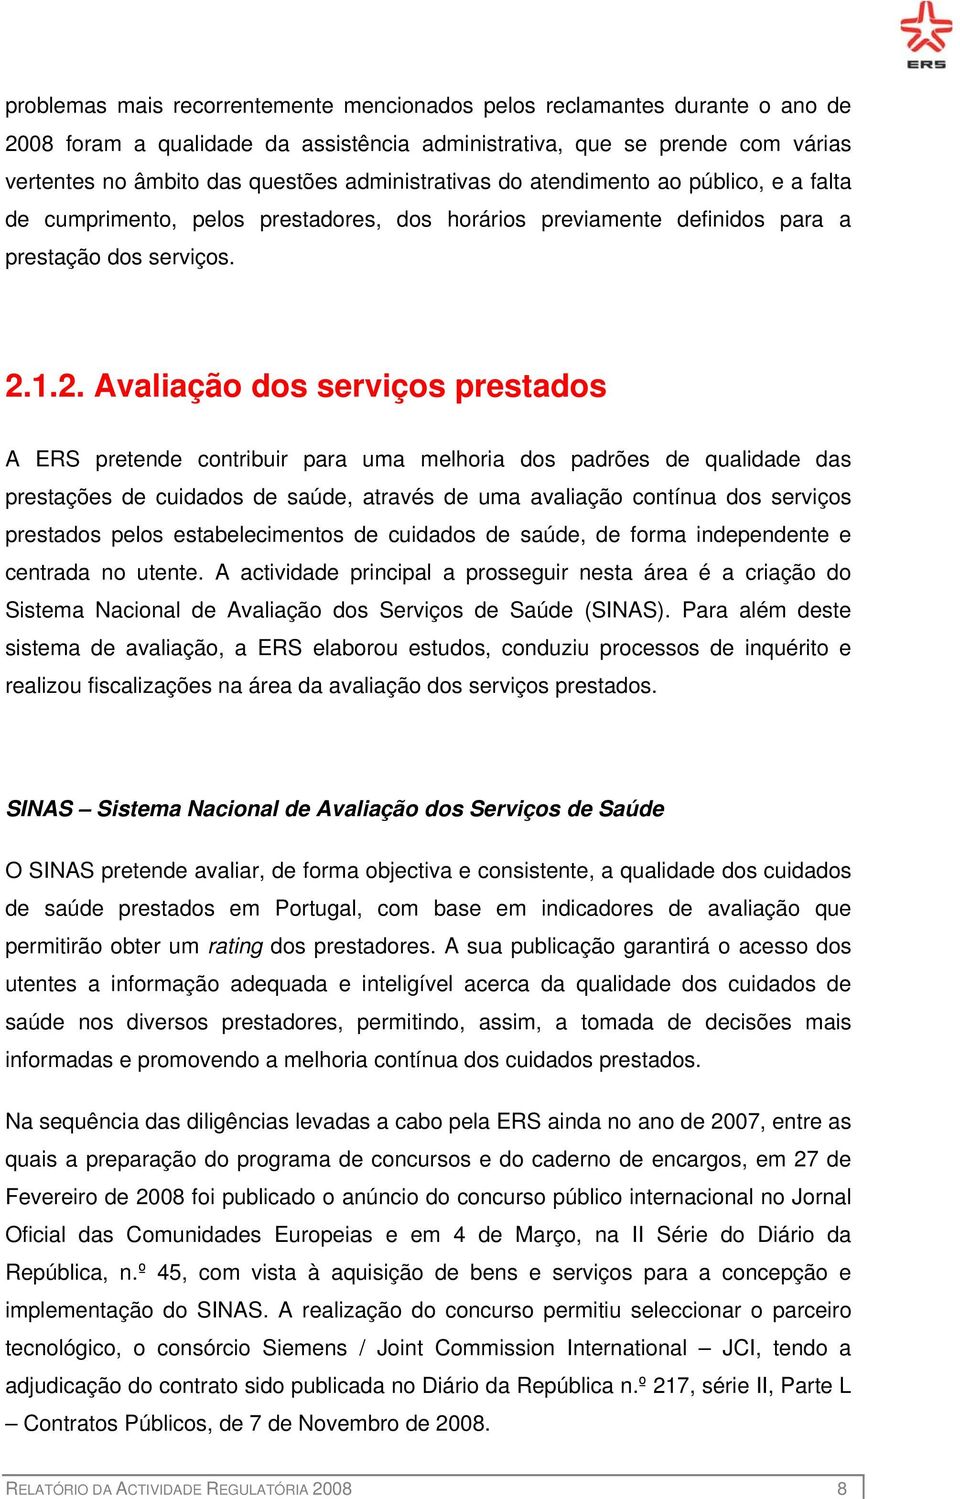 1.2. Avaliação dos serviços prestados A ERS pretende contribuir para uma melhoria dos padrões de qualidade das prestações de cuidados de saúde, através de uma avaliação contínua dos serviços